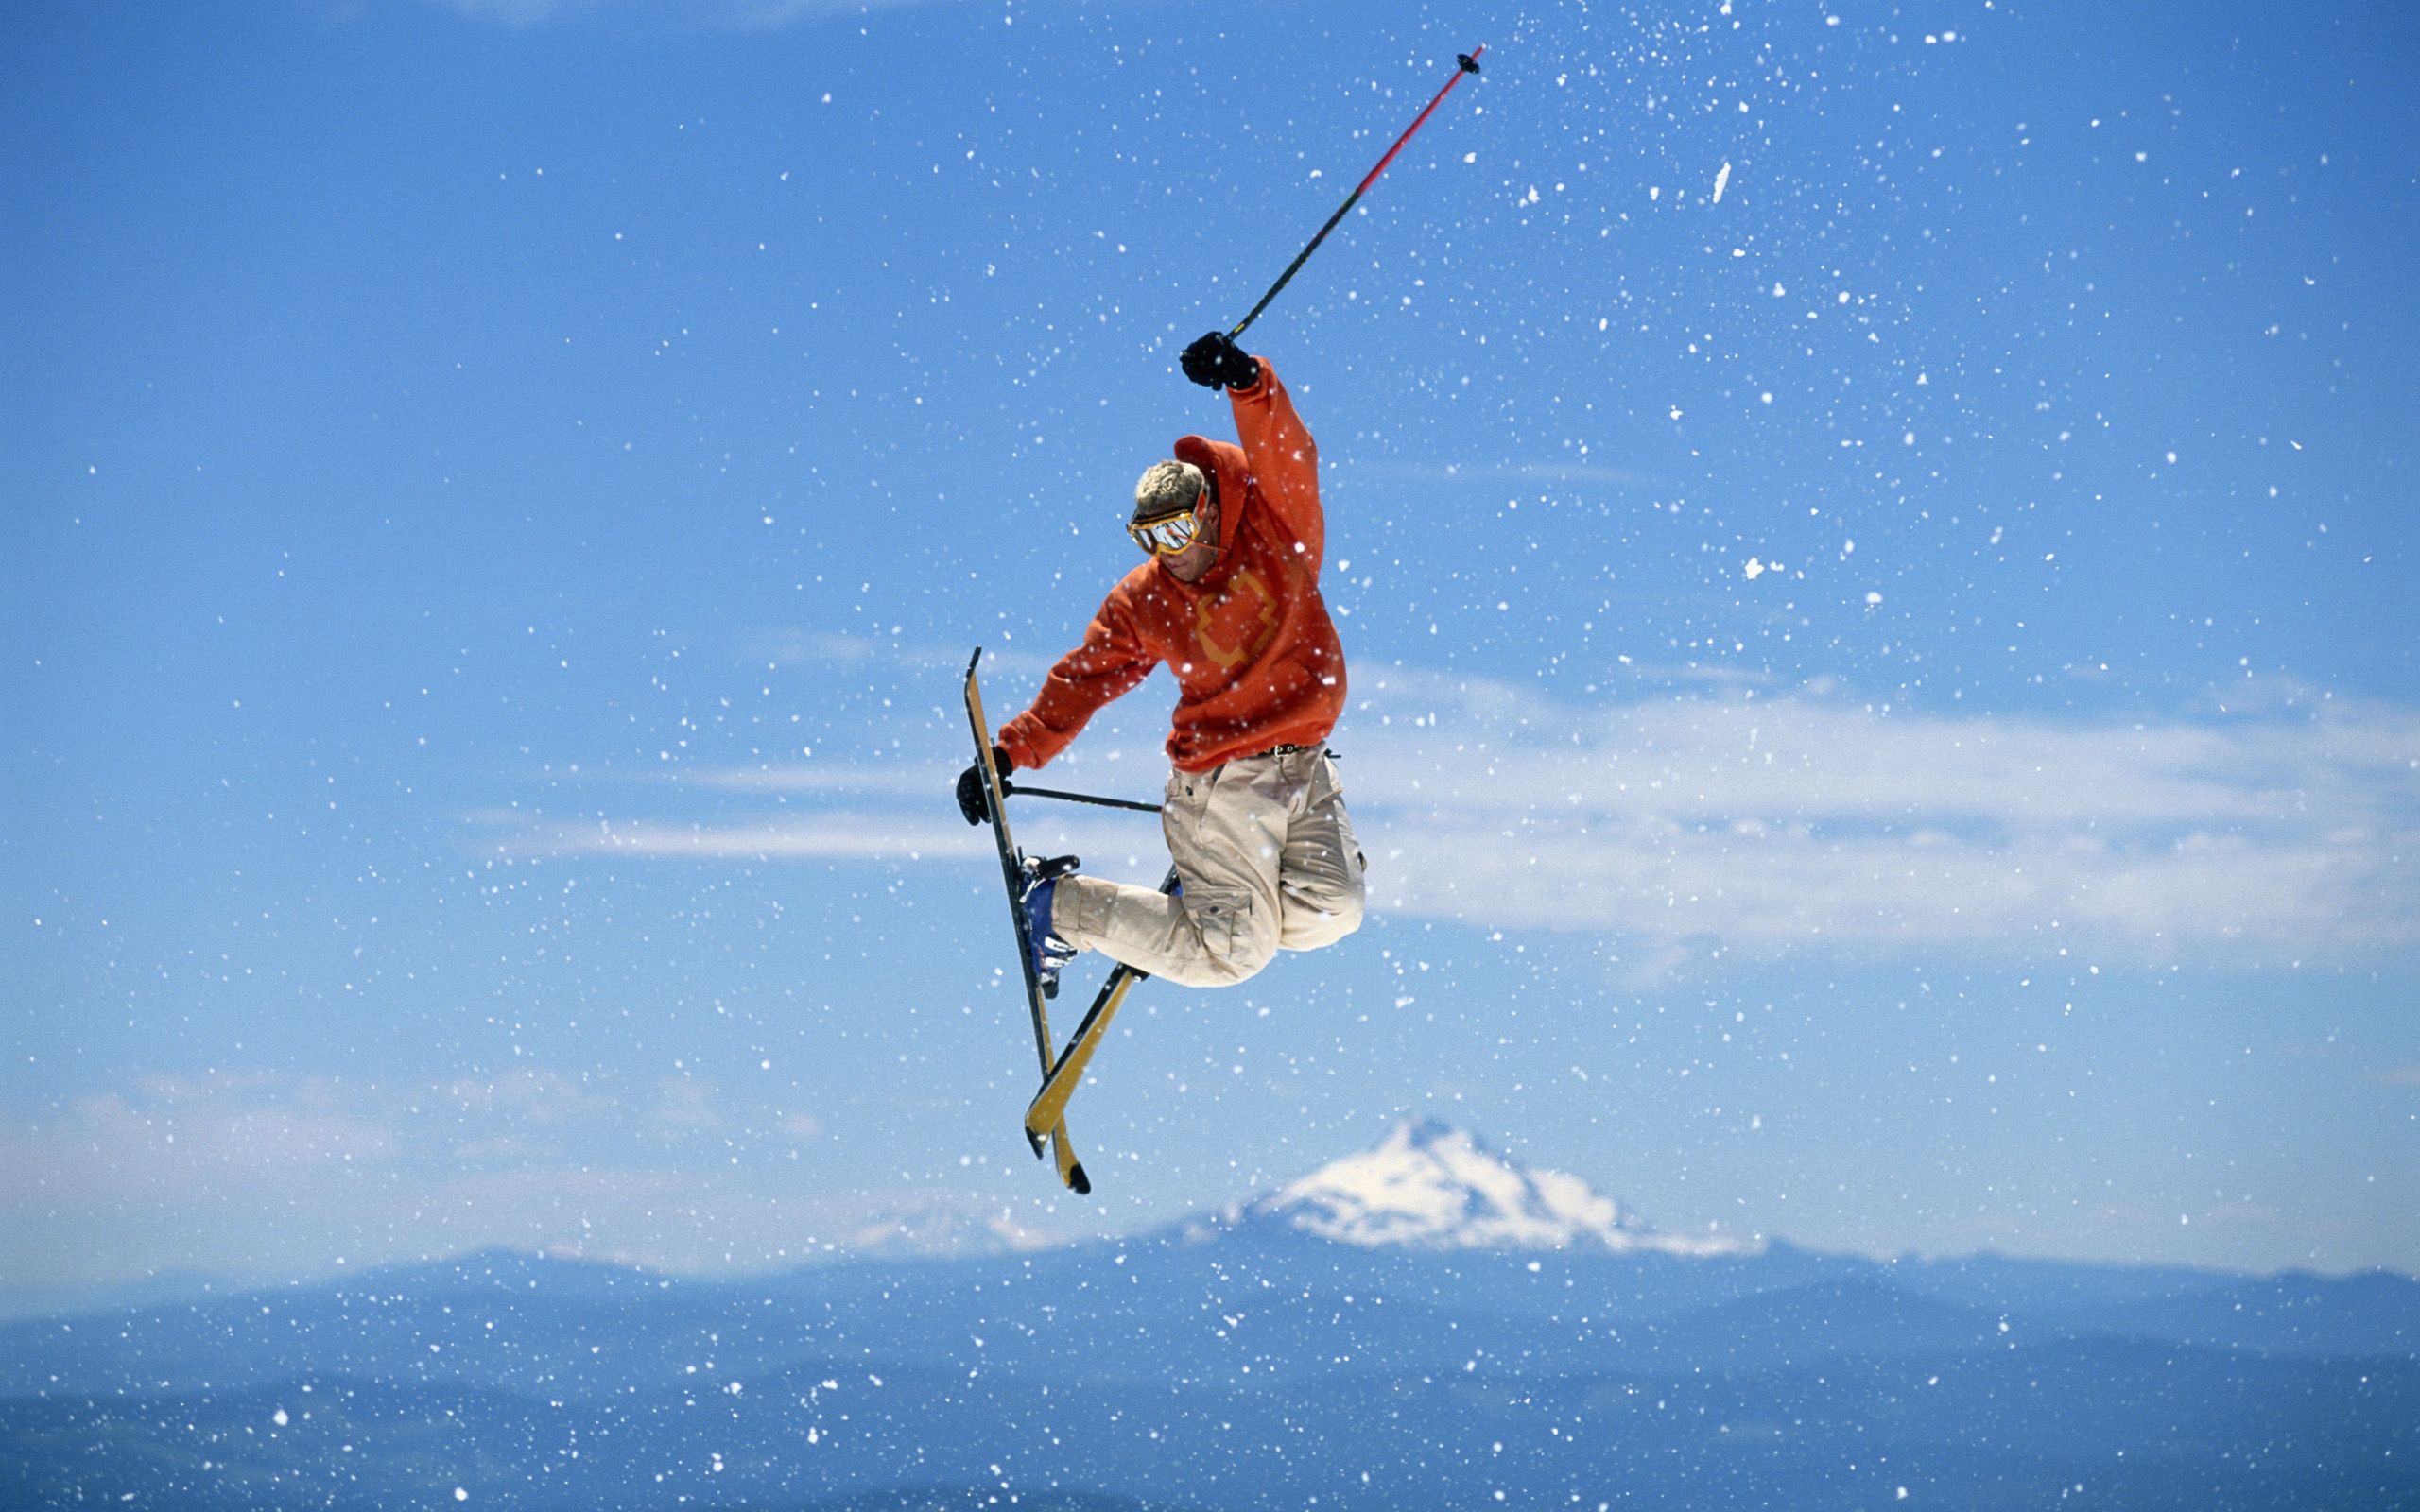 vertical wallpaper jump, sports, snow, bounce, snowboard